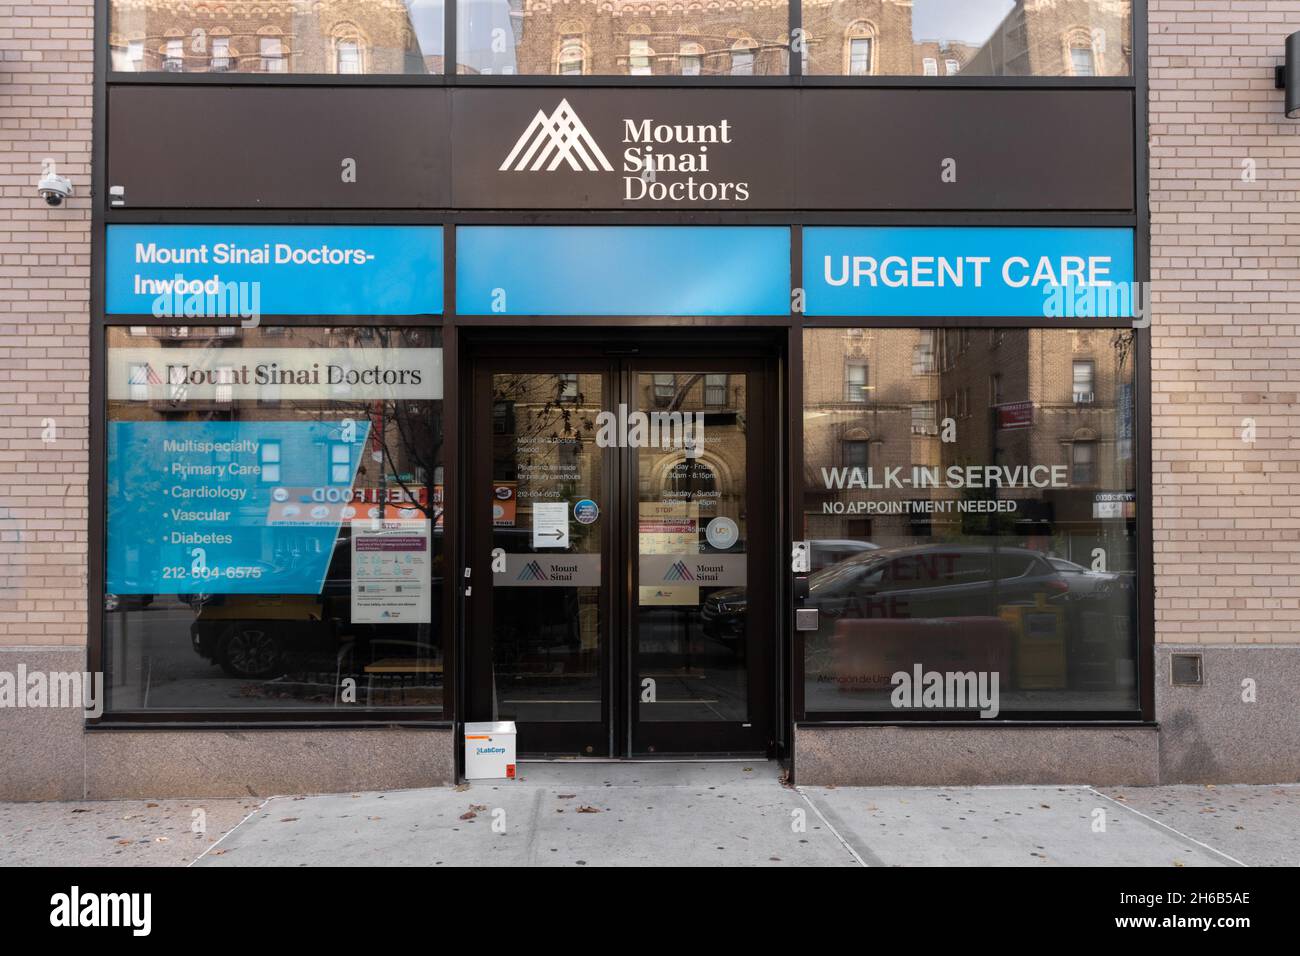 Clínica de atención médica urgente en Mount Sinai ubicada en Broadway en Inwood, Manhattan, parte del Mt. Sinai sistema de atención médica ambulatoria, no Foto de stock